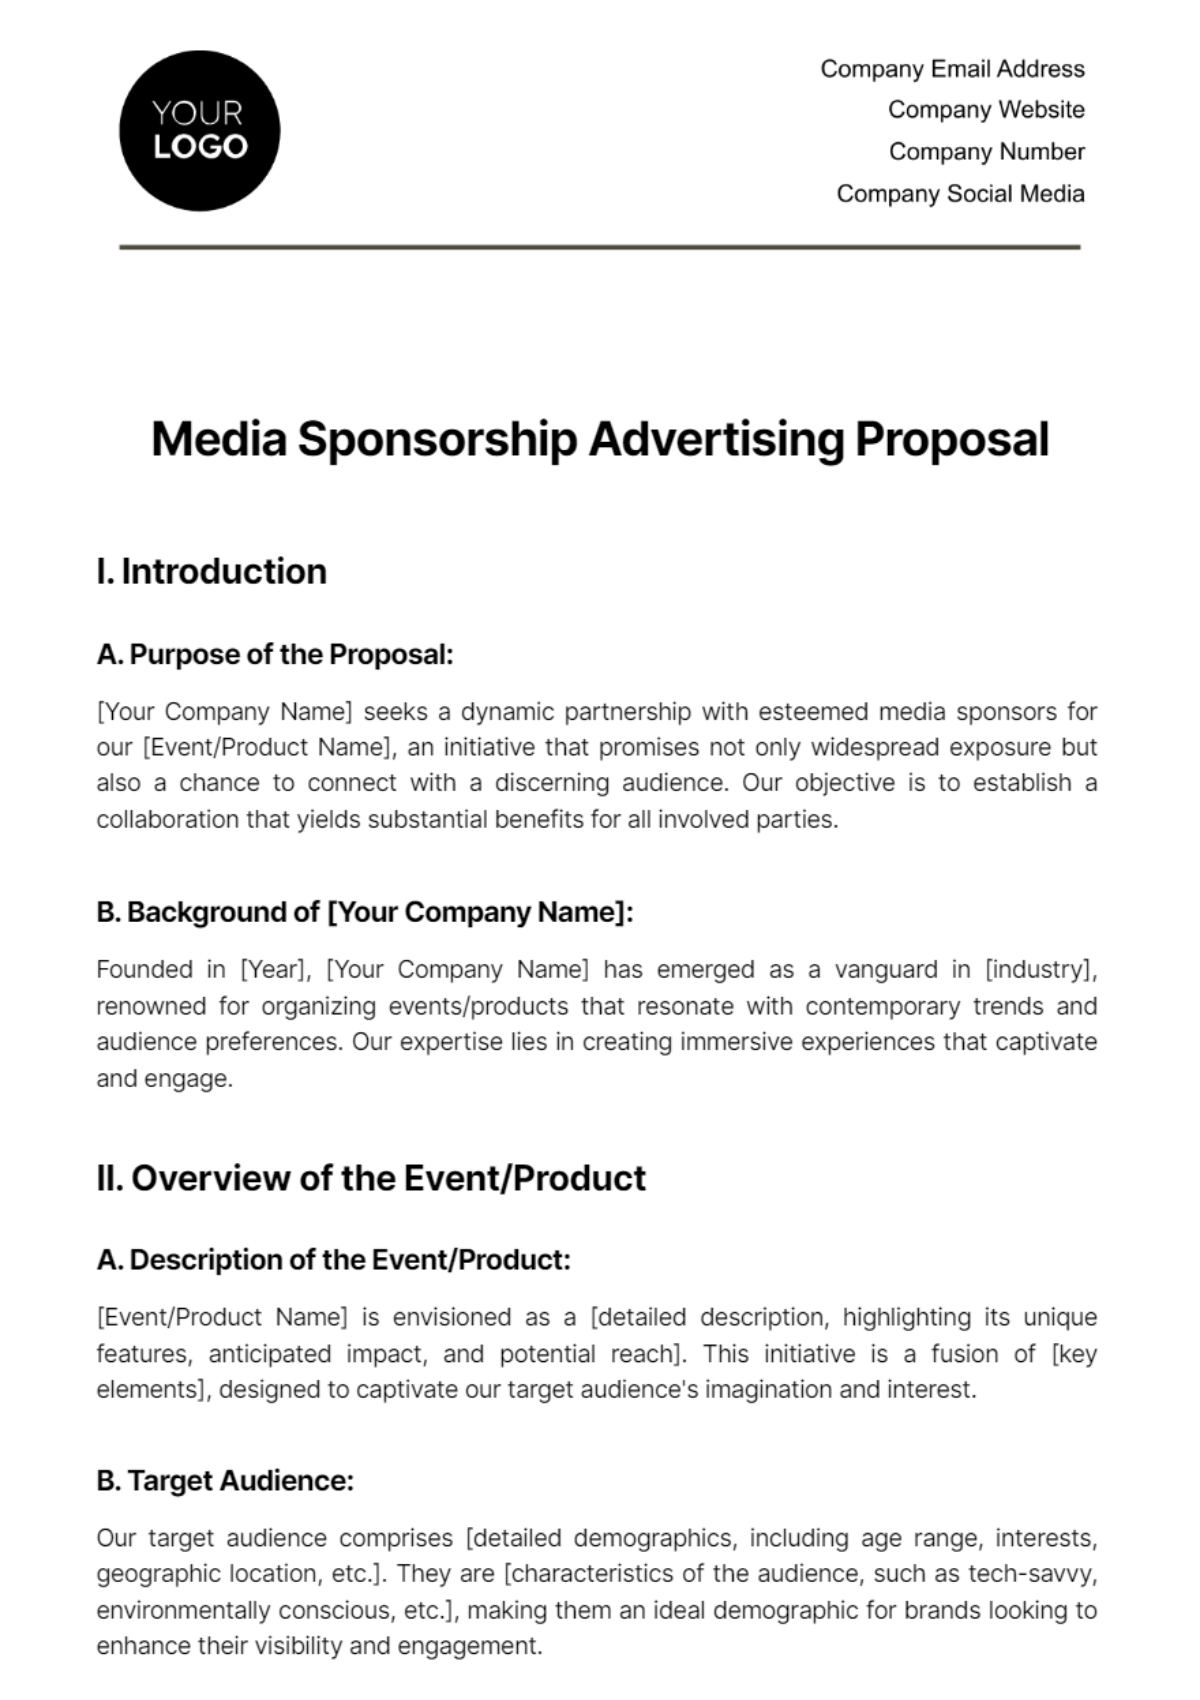 Media Sponsorship Advertising Proposal Template